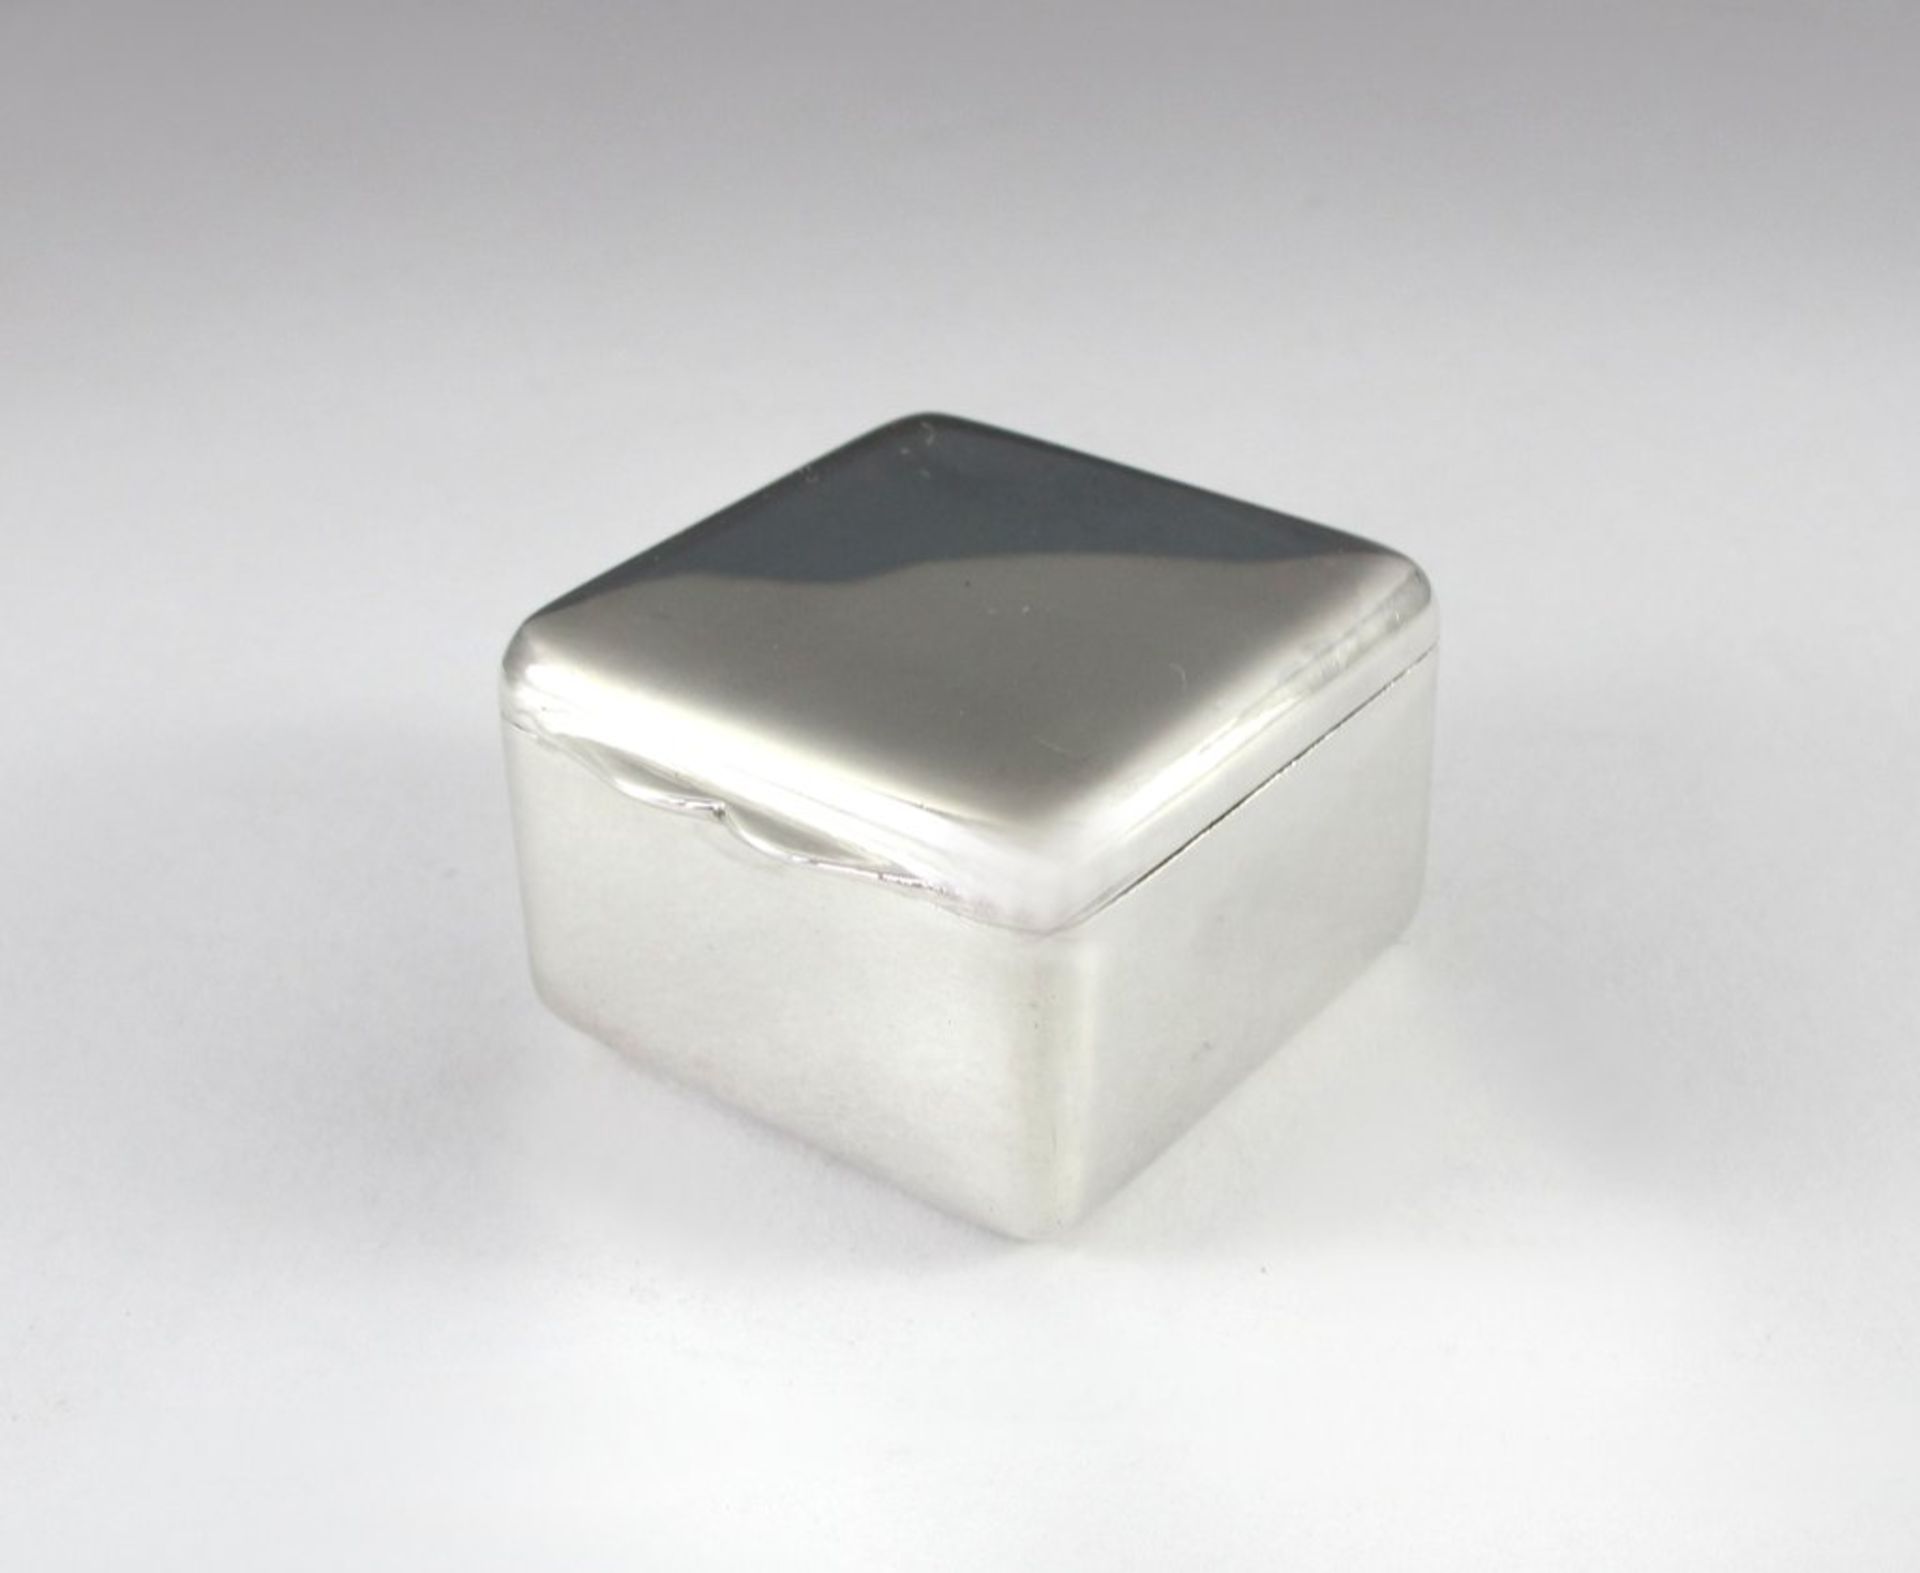 Quadratisches Silberdöschen. England. 3,5 x 3,5 cm. Sterlingsilber, 33 g